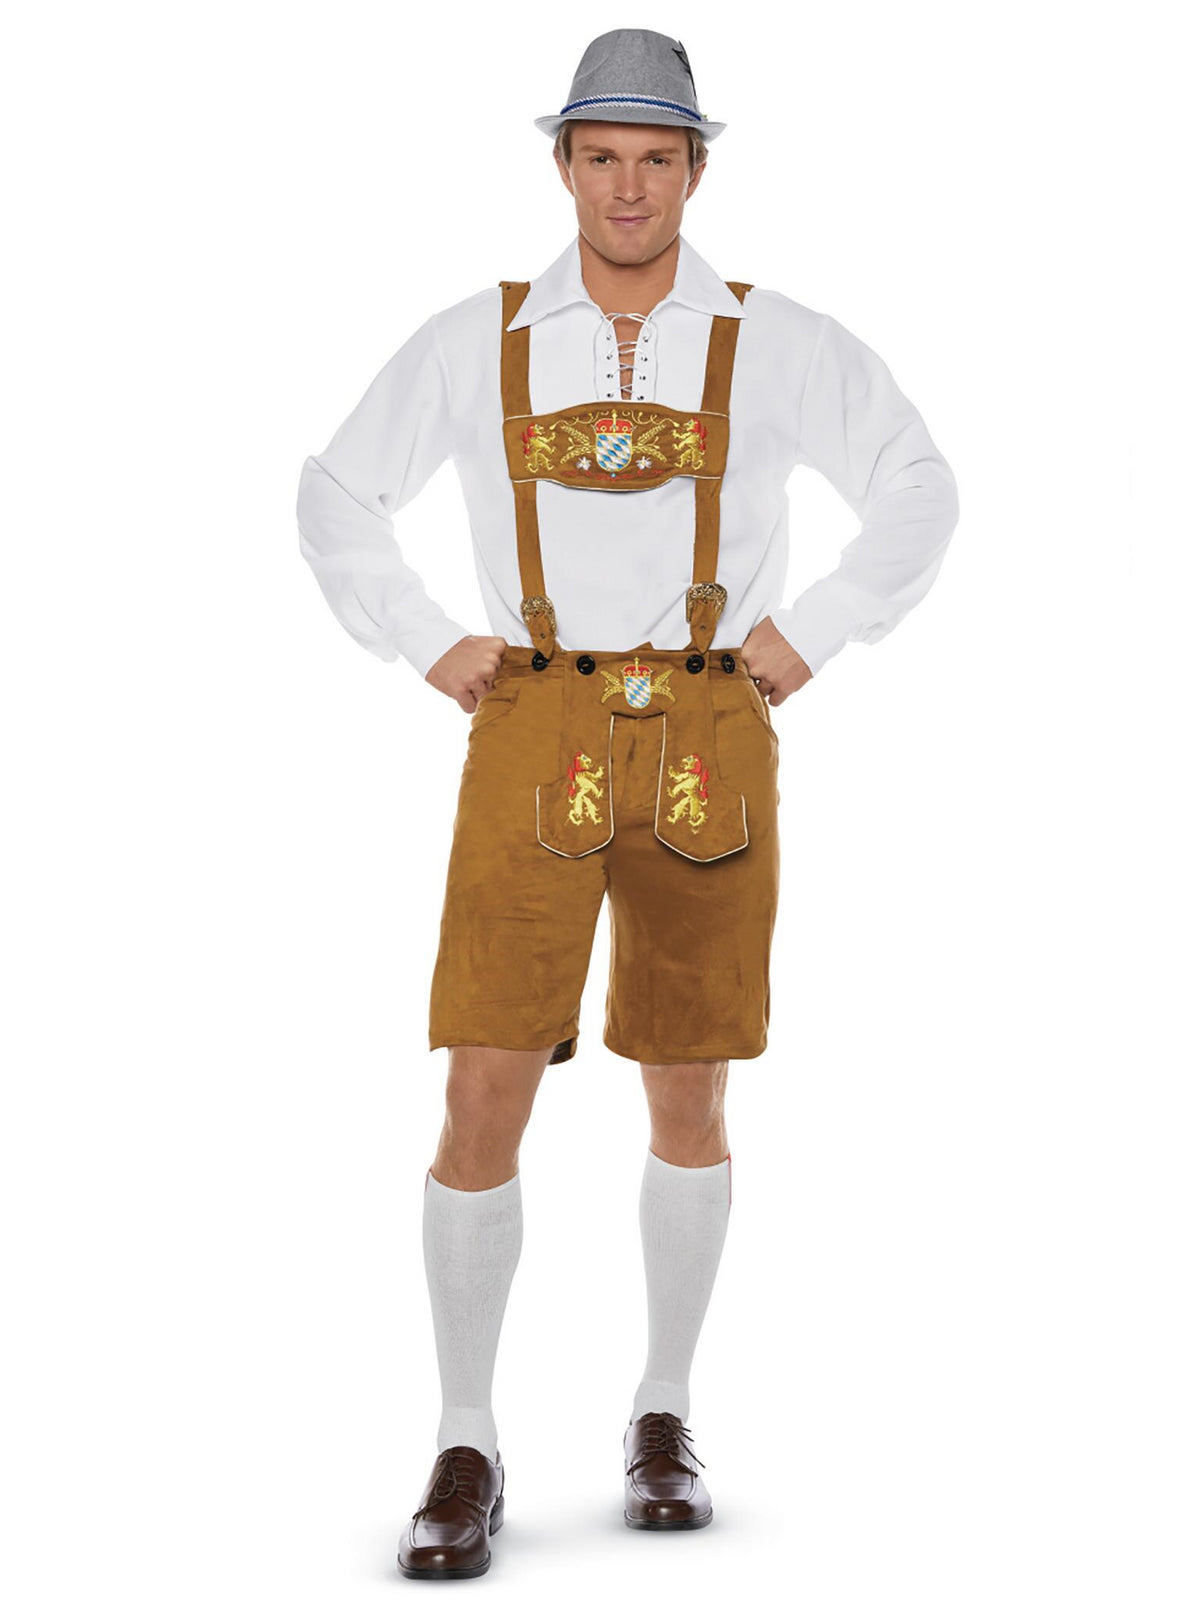 Oktoberfest Guy Costume for Men - Chasing Fireflies